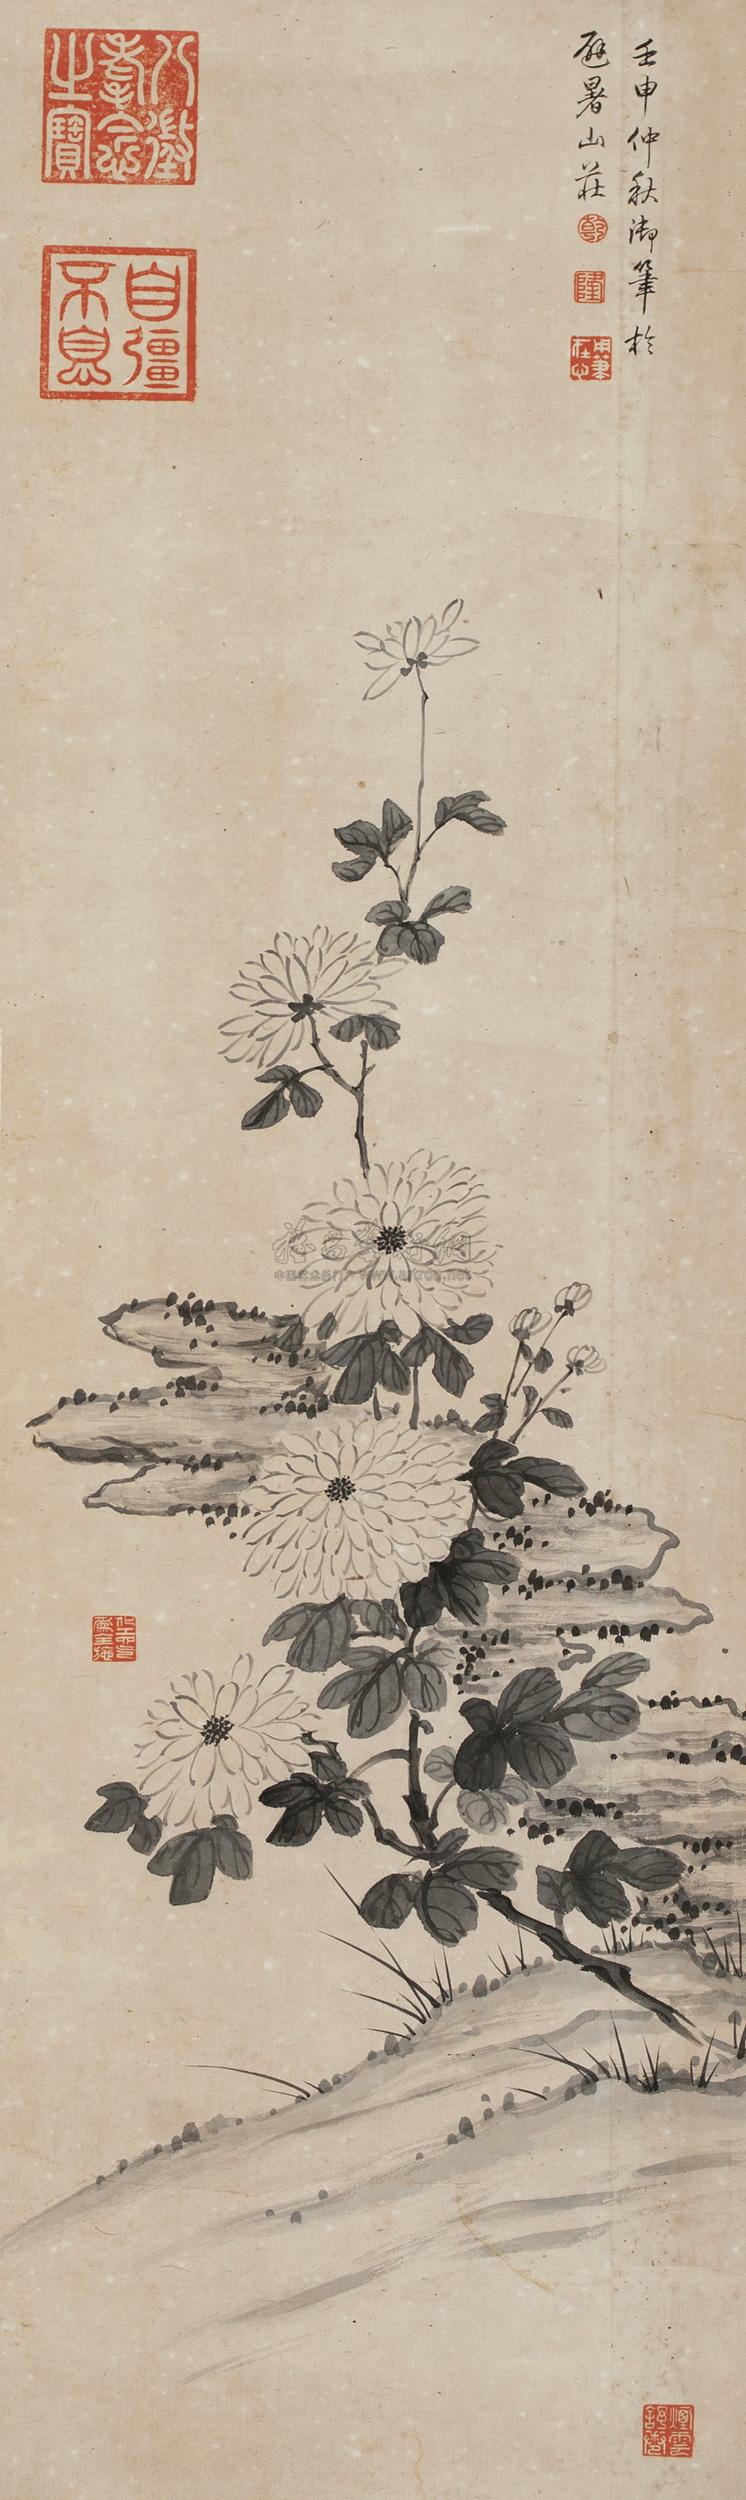 *1474 壬申(1752年)作 菊石图 立轴 纸本